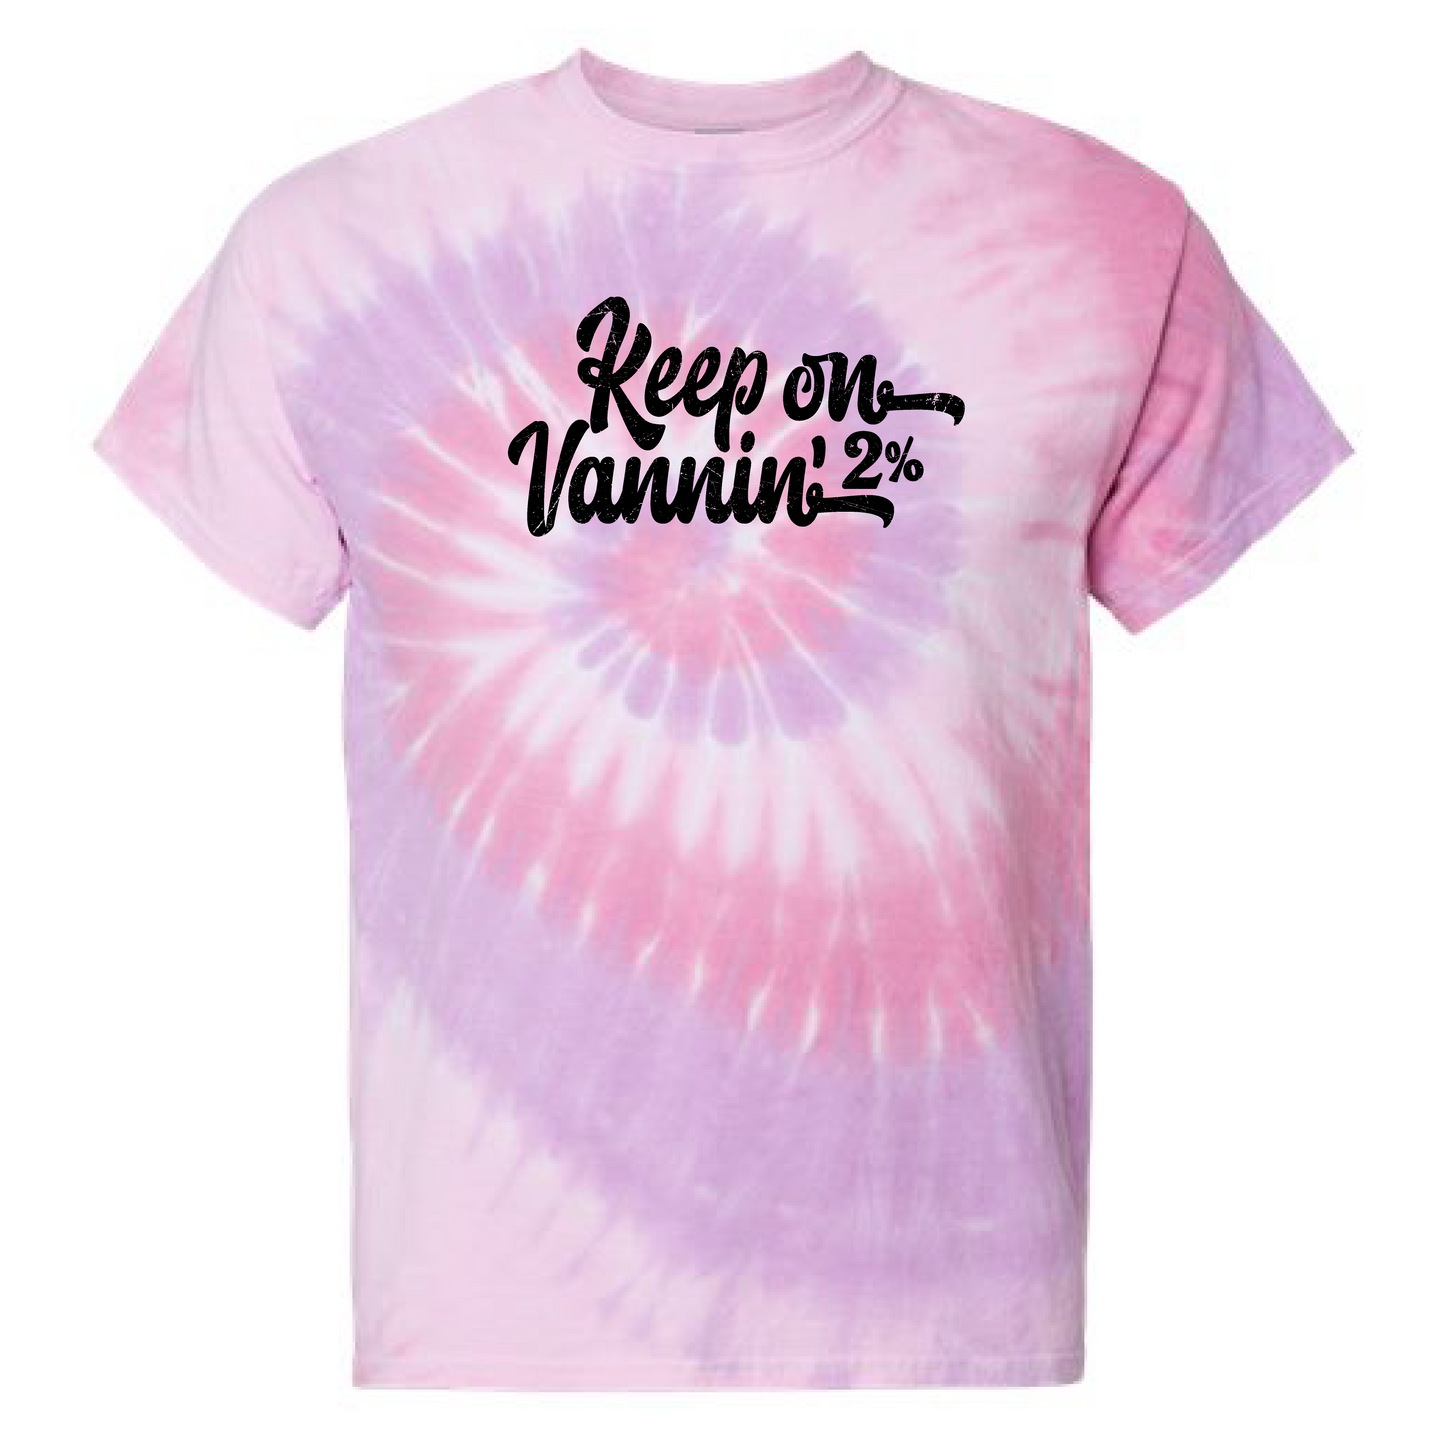 Keep on Vannin' 2% Tie Dye Colors